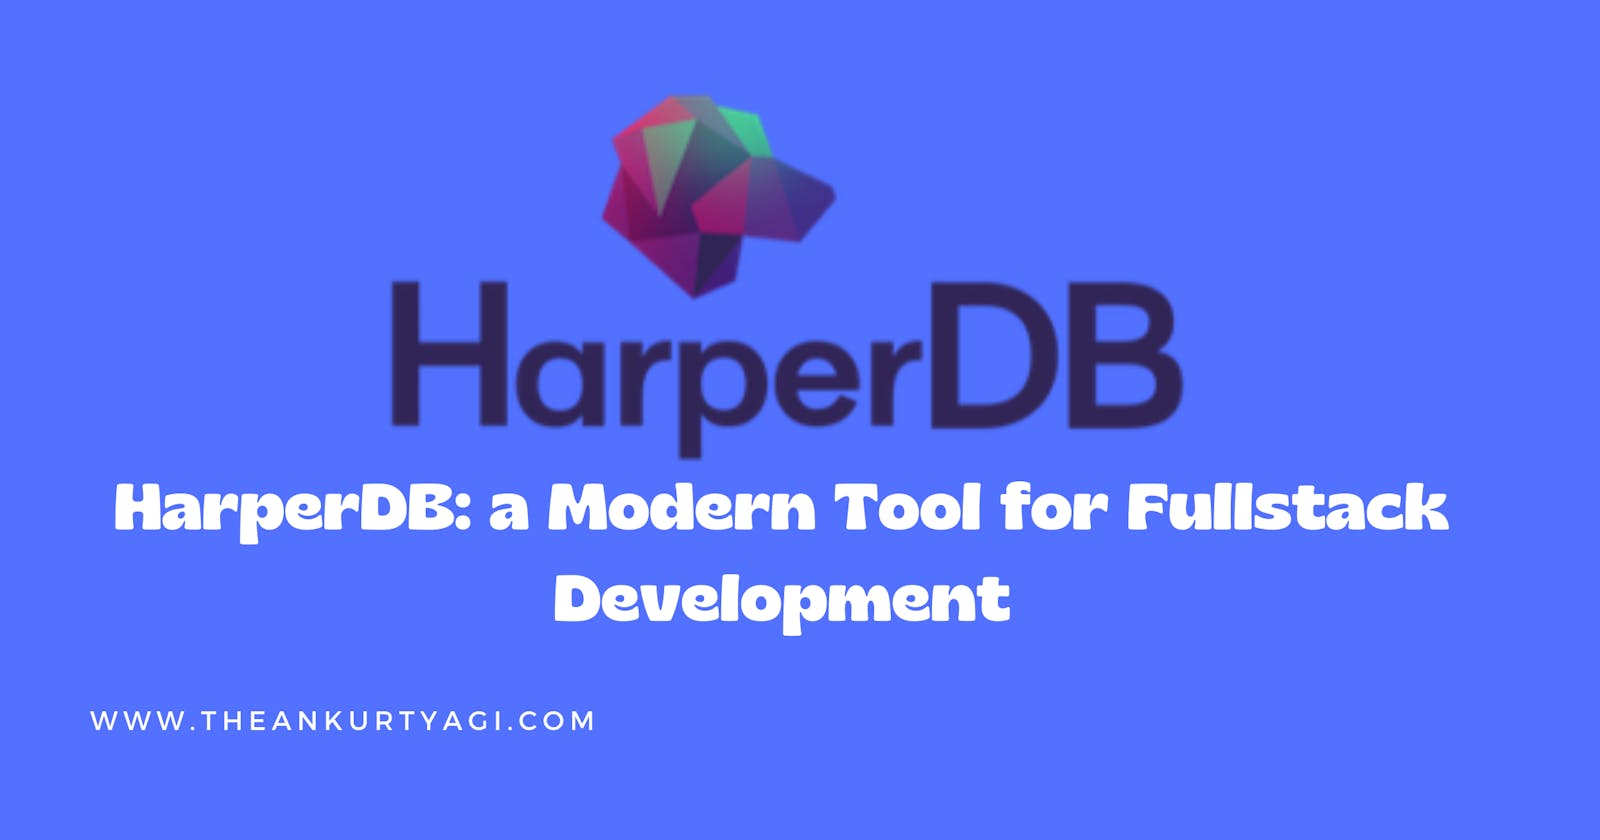 HarperDB: a Modern Tool for Fullstack Development